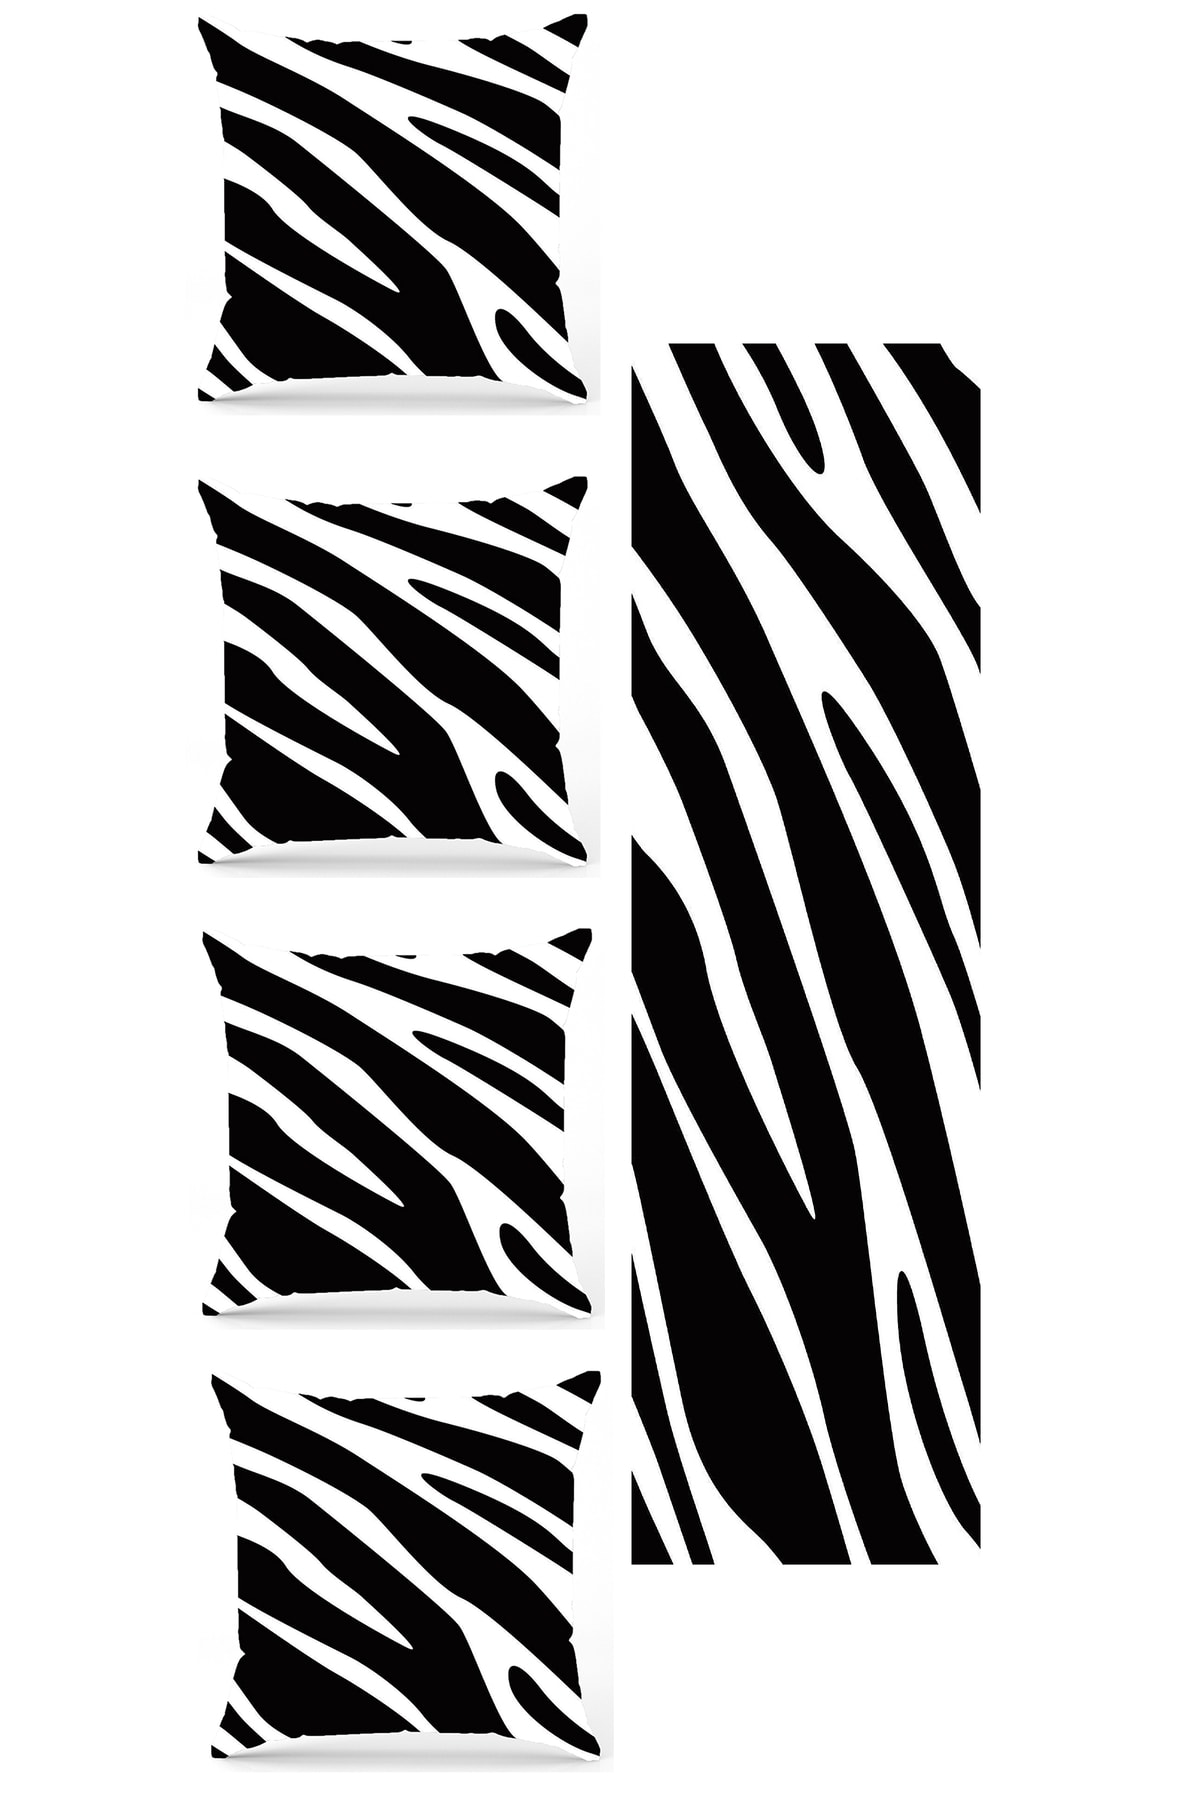 BY Fatih Concept Siyah Beyaz Zebra Desen 5 Parça Çift Taraf Baskılı Özel Tasarım Dekoratif Kırlent Kılıfı Runner Seti